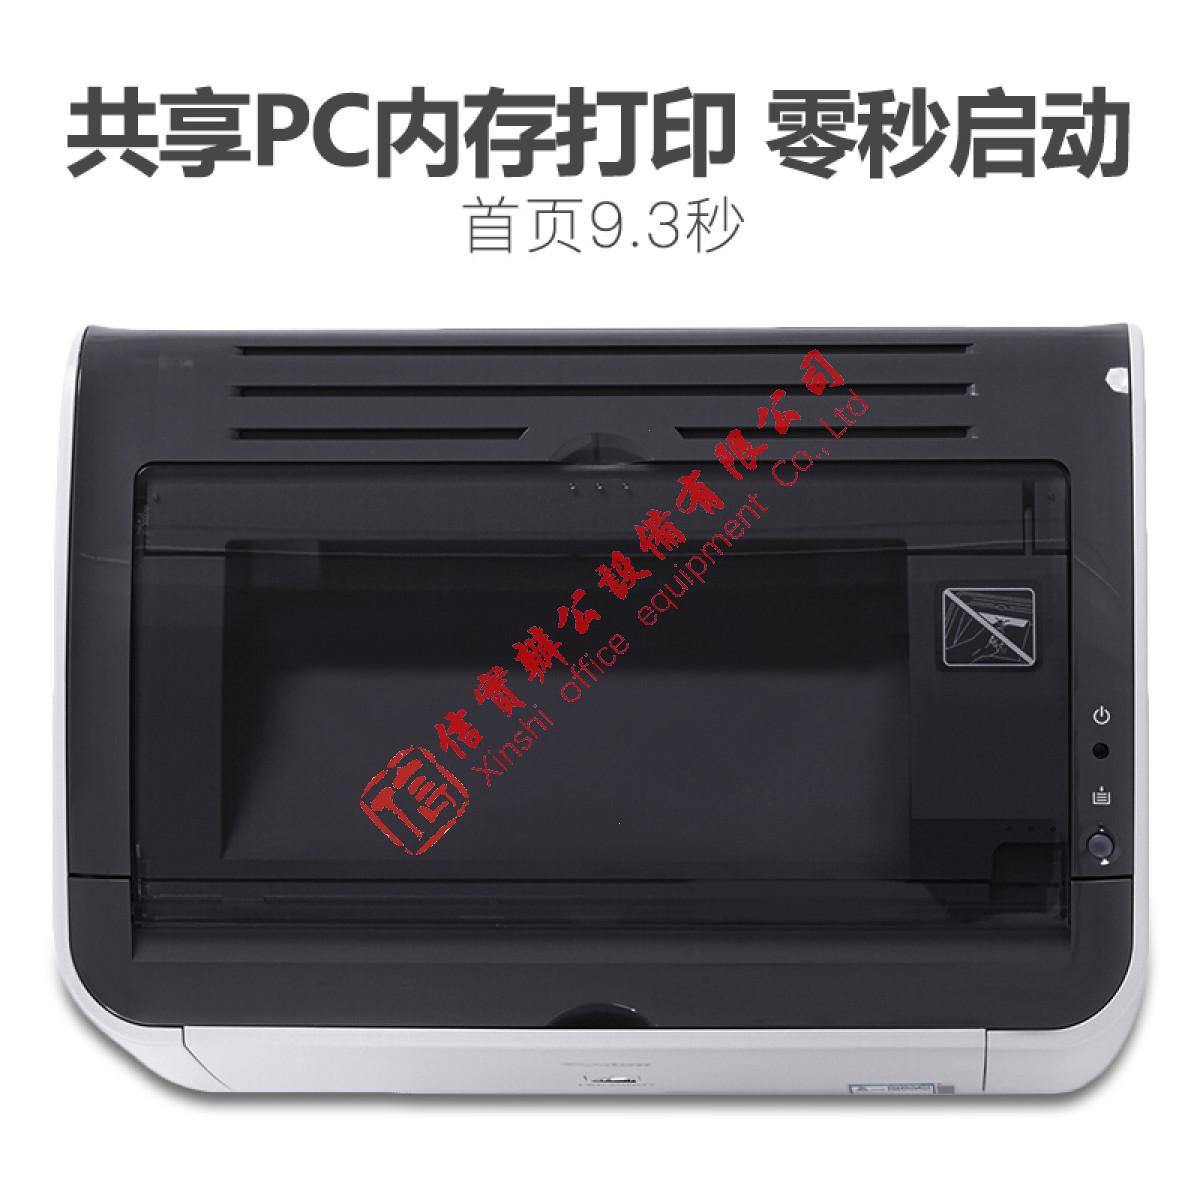 激光打印机 佳能/CANON LBP2900+ 黑白 A4